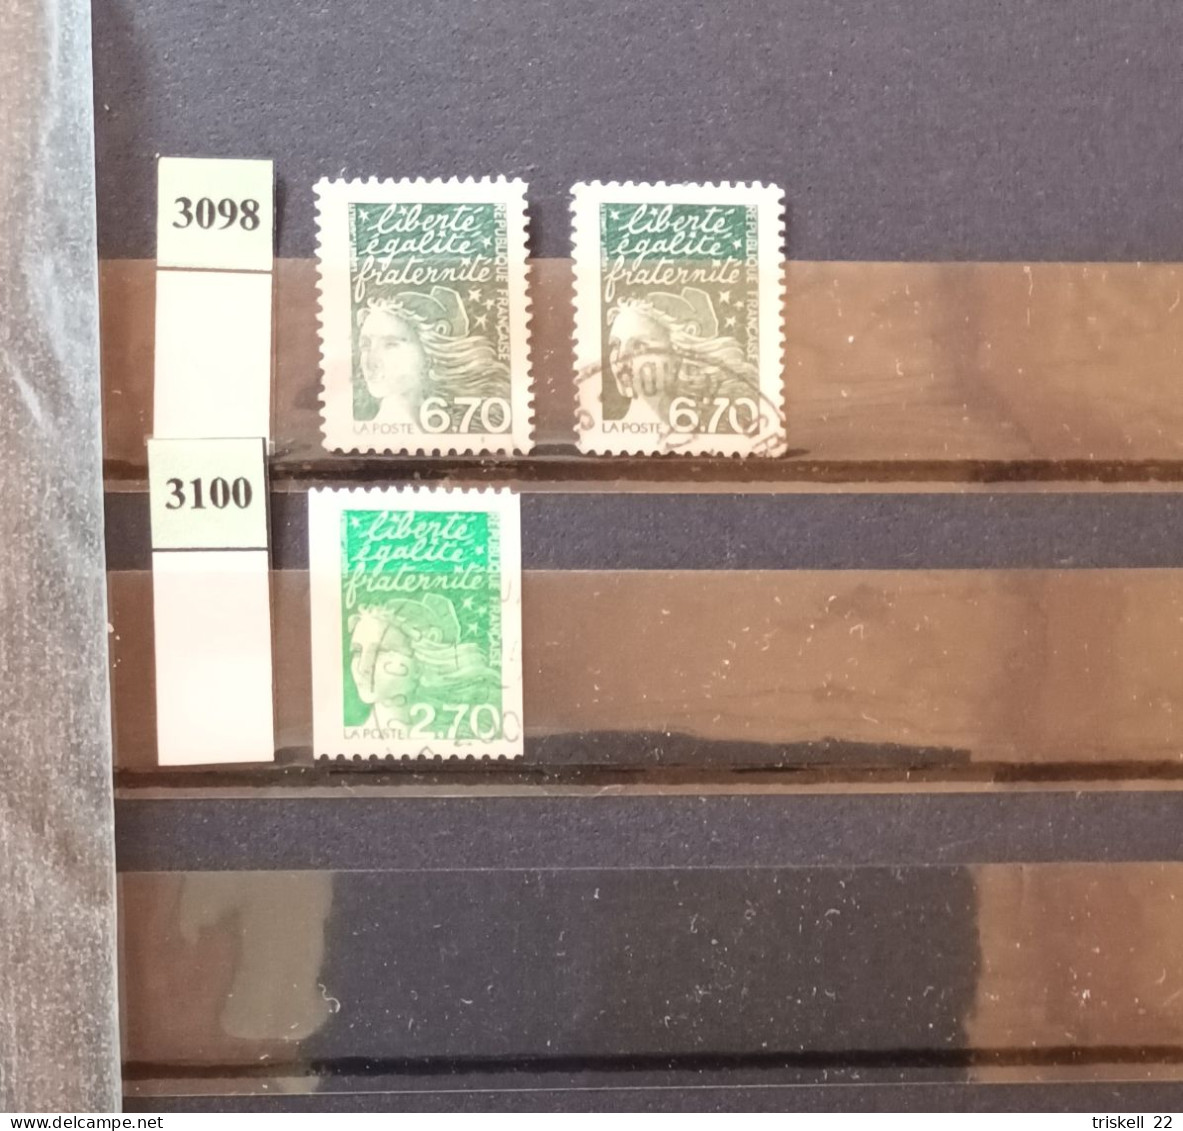 Album 2 contenant 510 timbres français oblitérés (avec doublons) entre le n° 2207 & 3100 (album offert) - cote non calcu